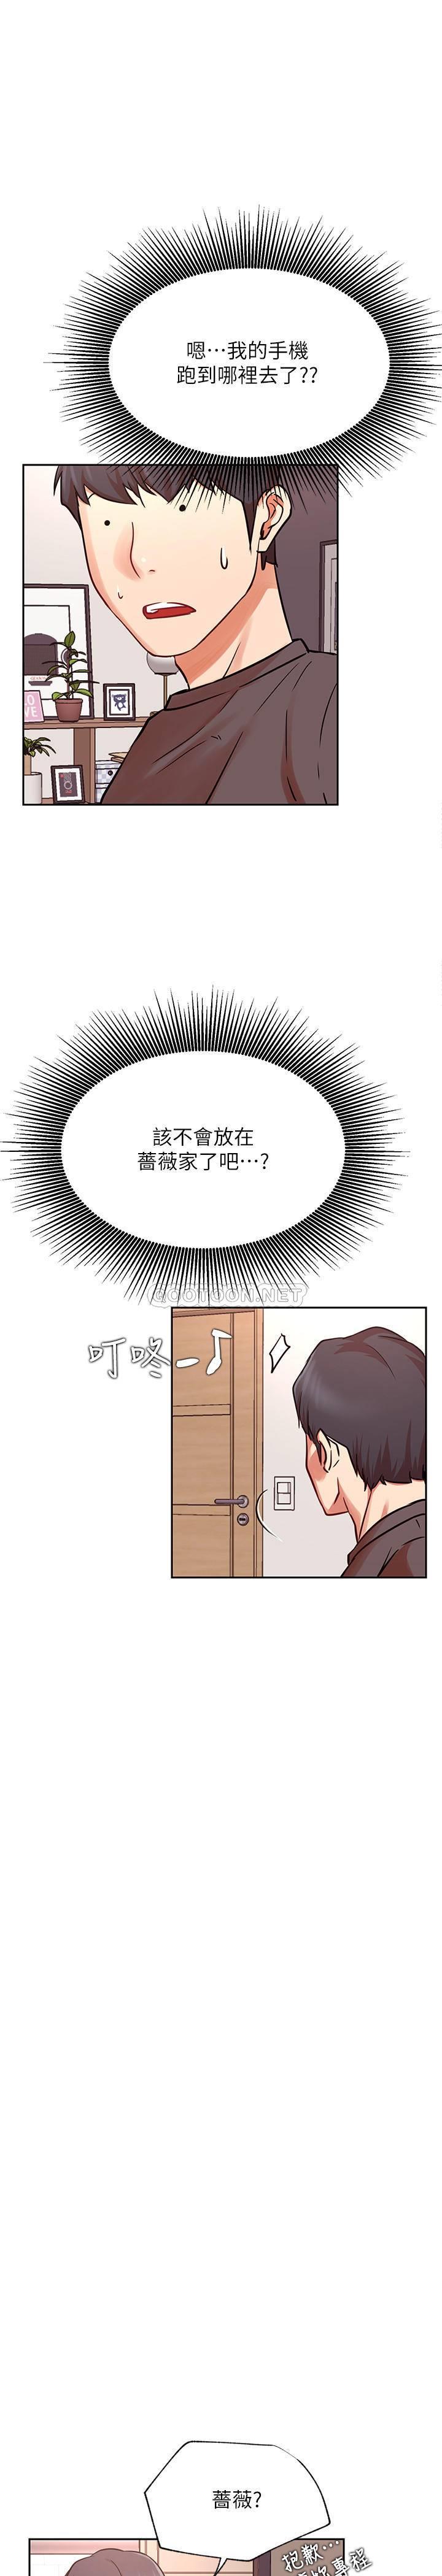 《网红私生活》漫画 第33话 - 临时造访的郑雪